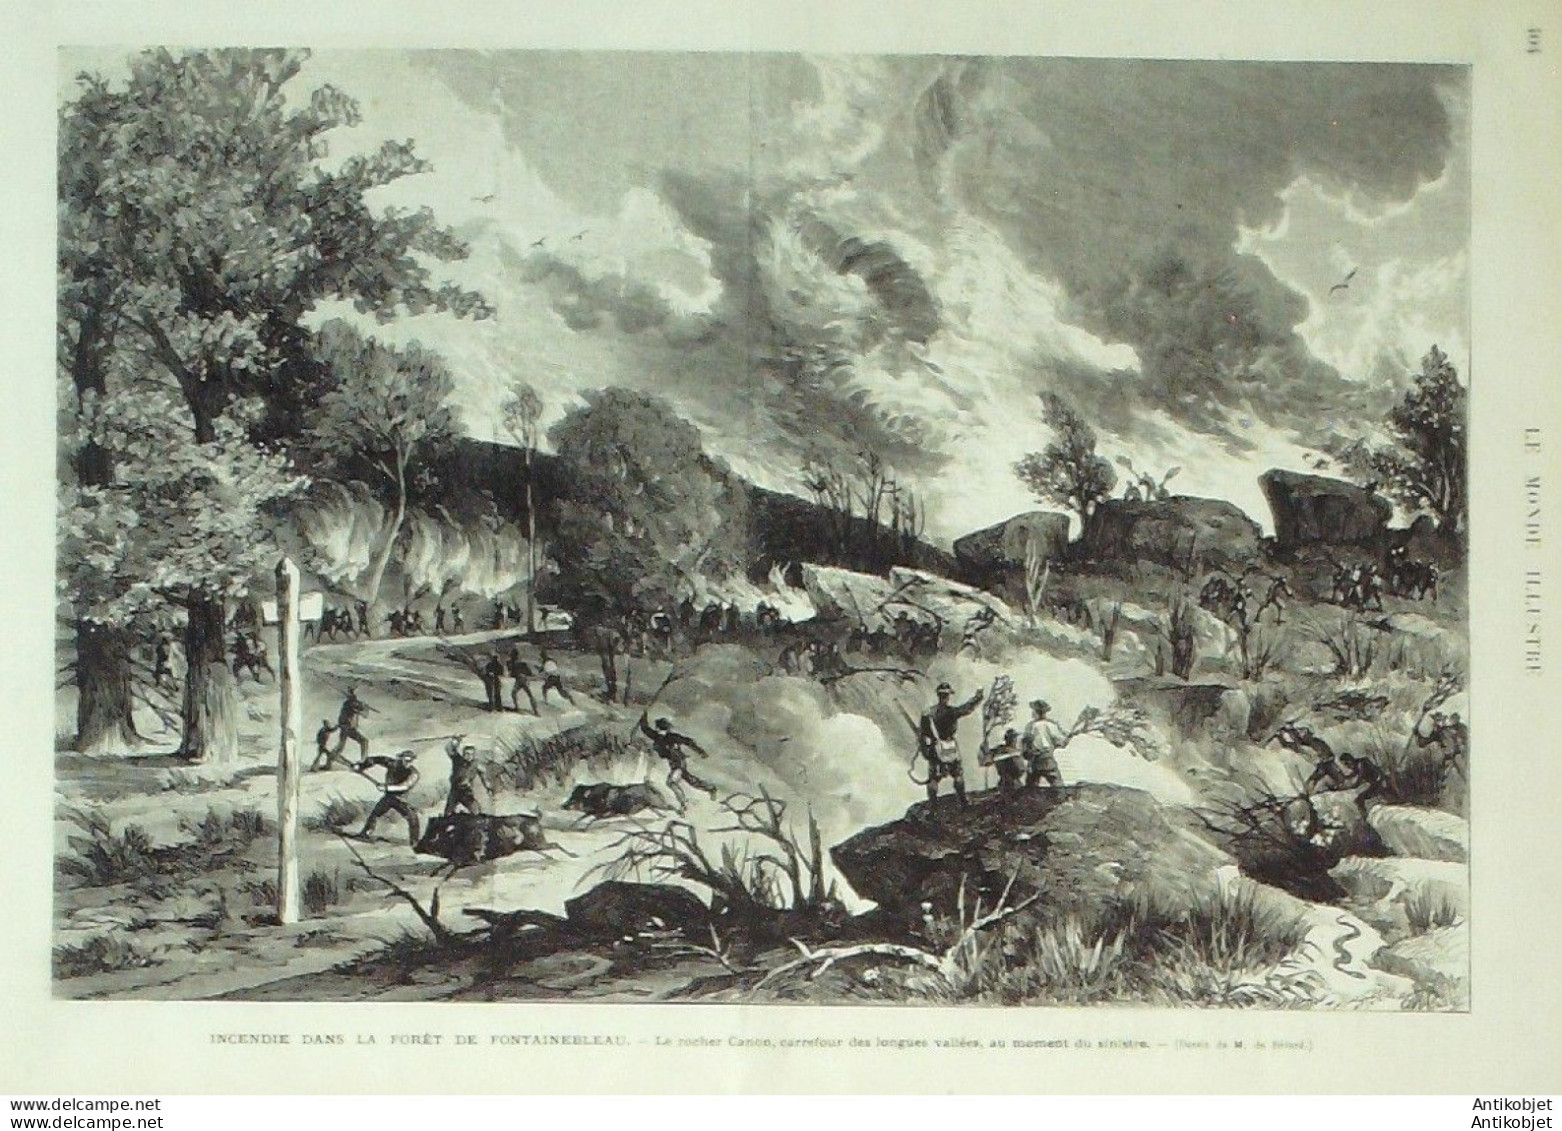 Le Monde illustré 1874 n°898 Douarnenez (29) Fontainebleau (77) incendie Lille (59) Belgique Gand